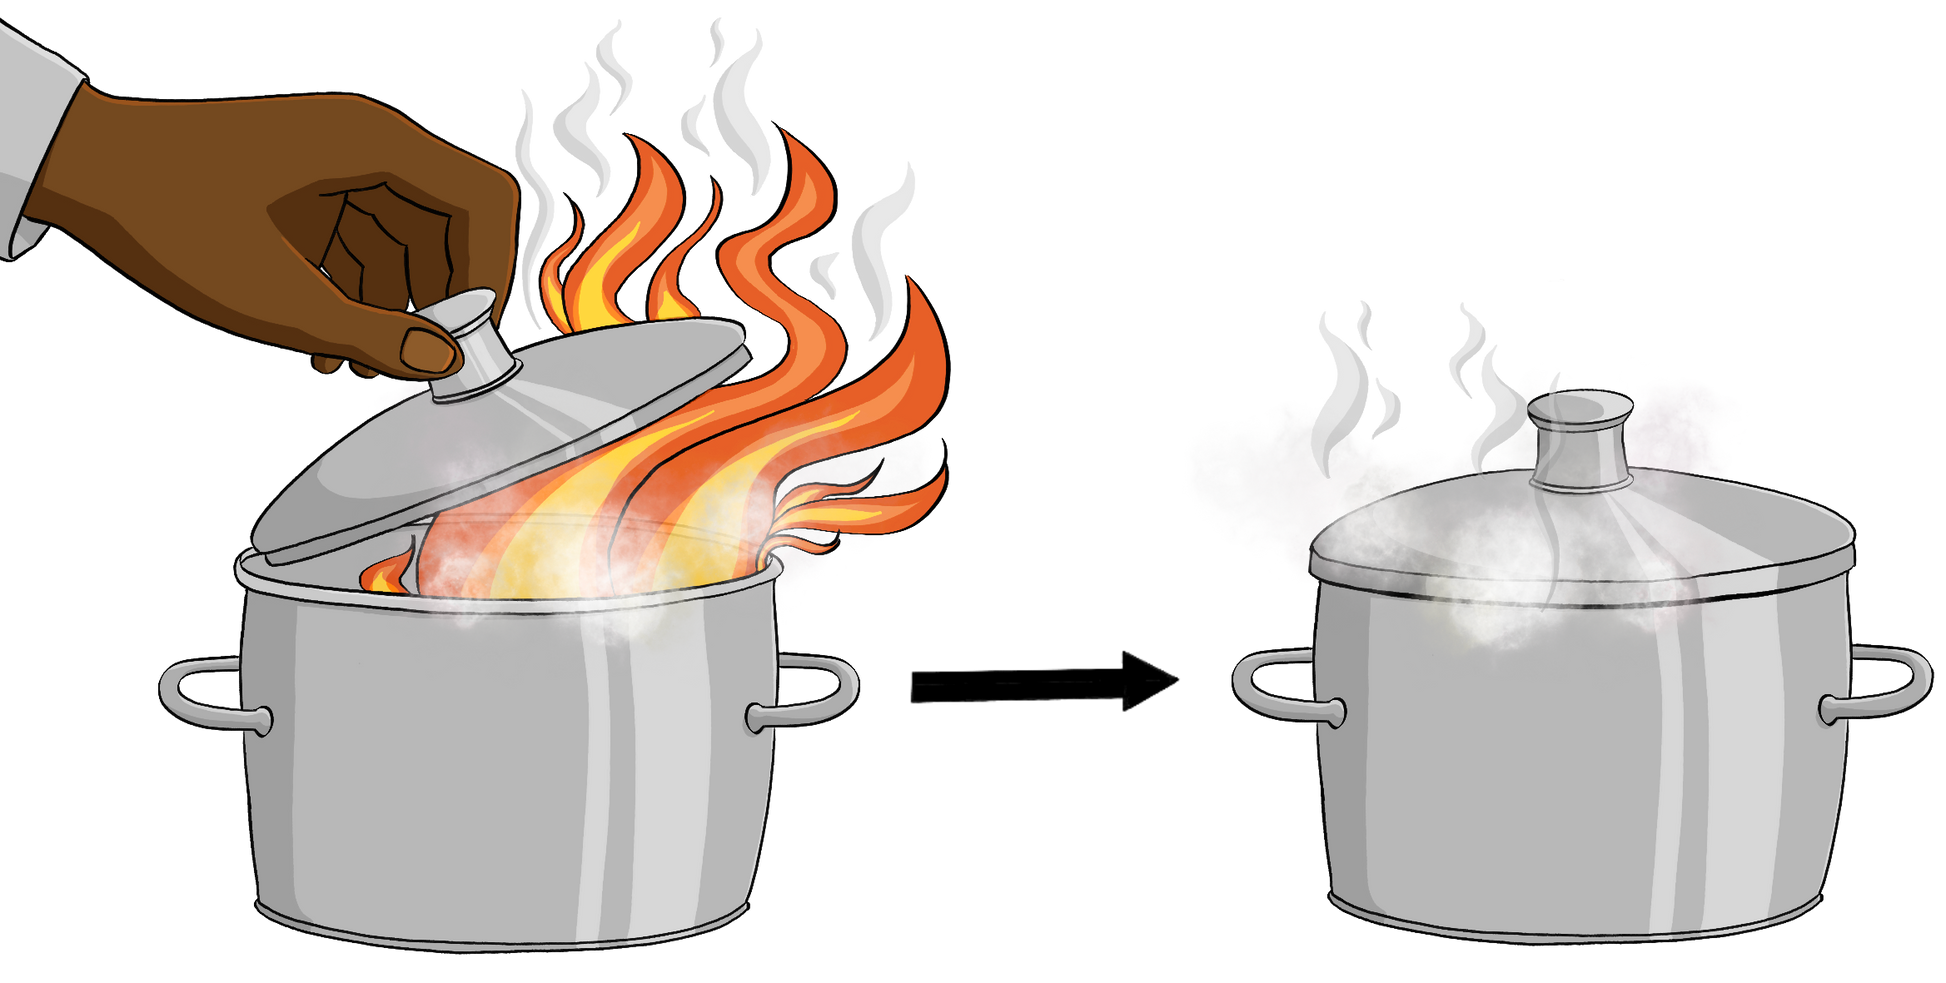 Eine Hand hält einen Deckel über einen brennenden Topf. Ein Pfeil zeigt von dem brennenden Topf auf einen geschlossenen Topf. Aus dem Topf kommt leichter Rauch.